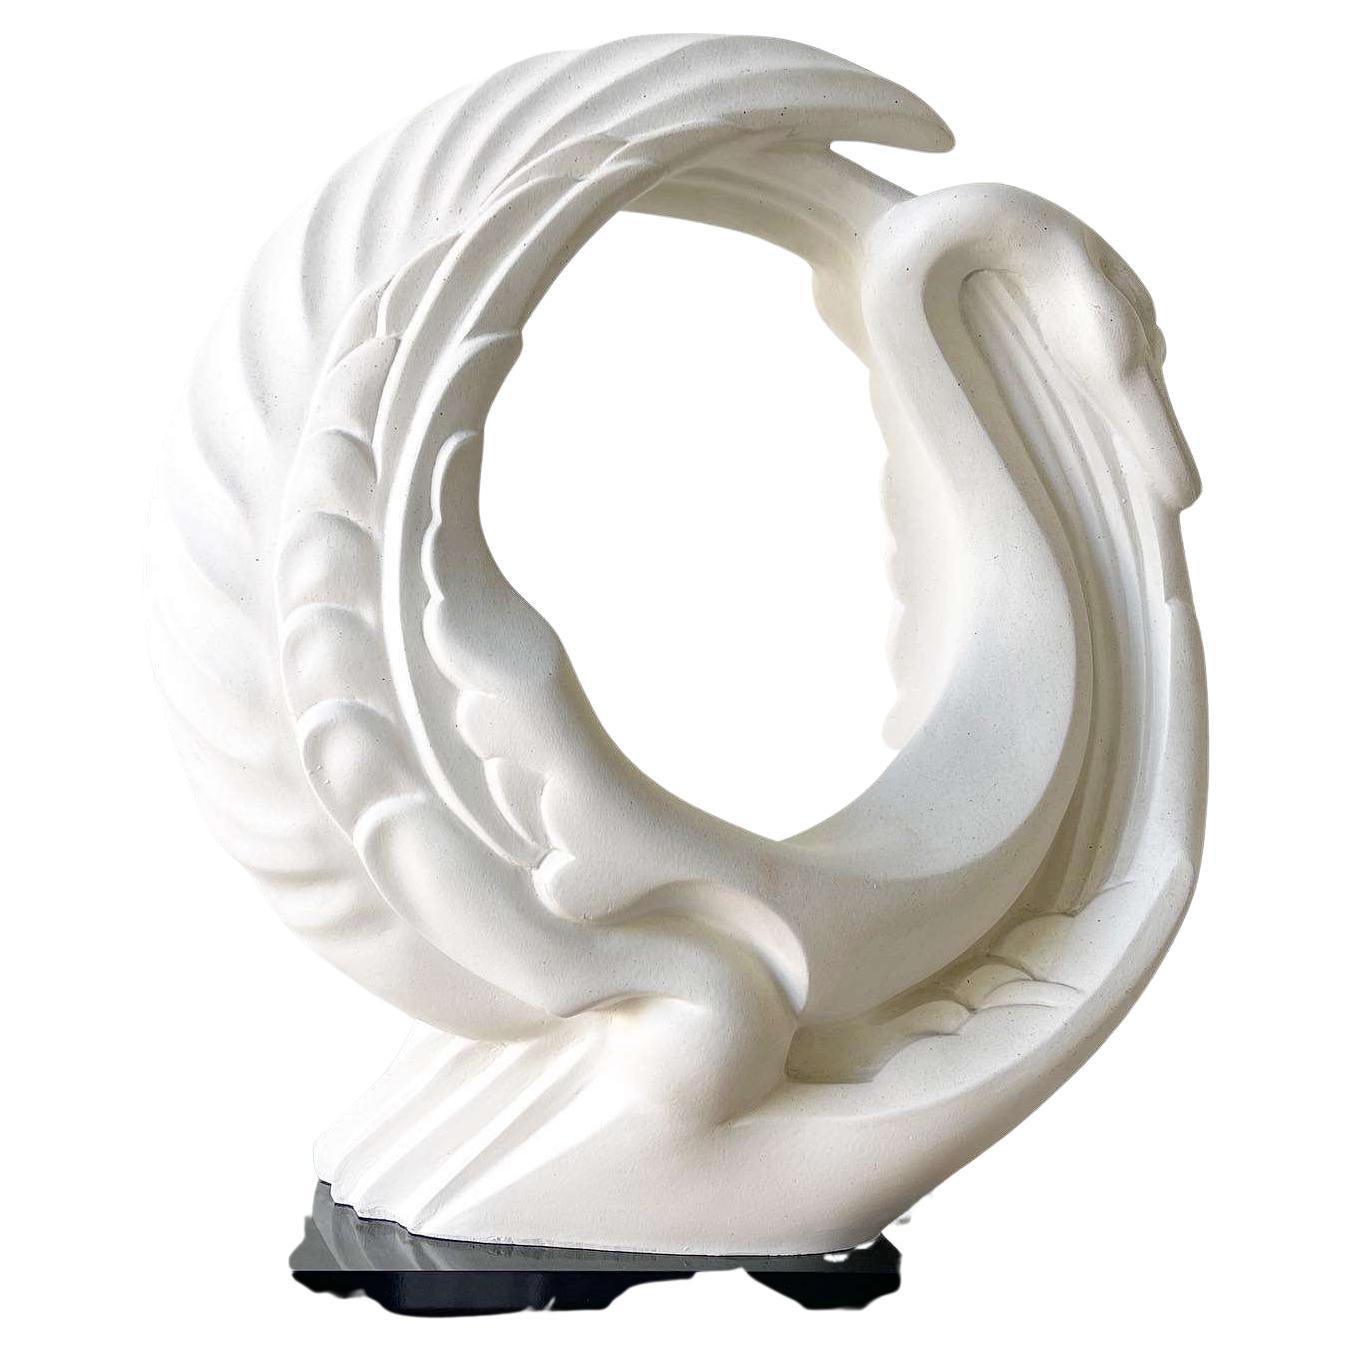 Postmoderne Alexsander Danel Austin Productions Skulptur 'Le Cygne' der Swan